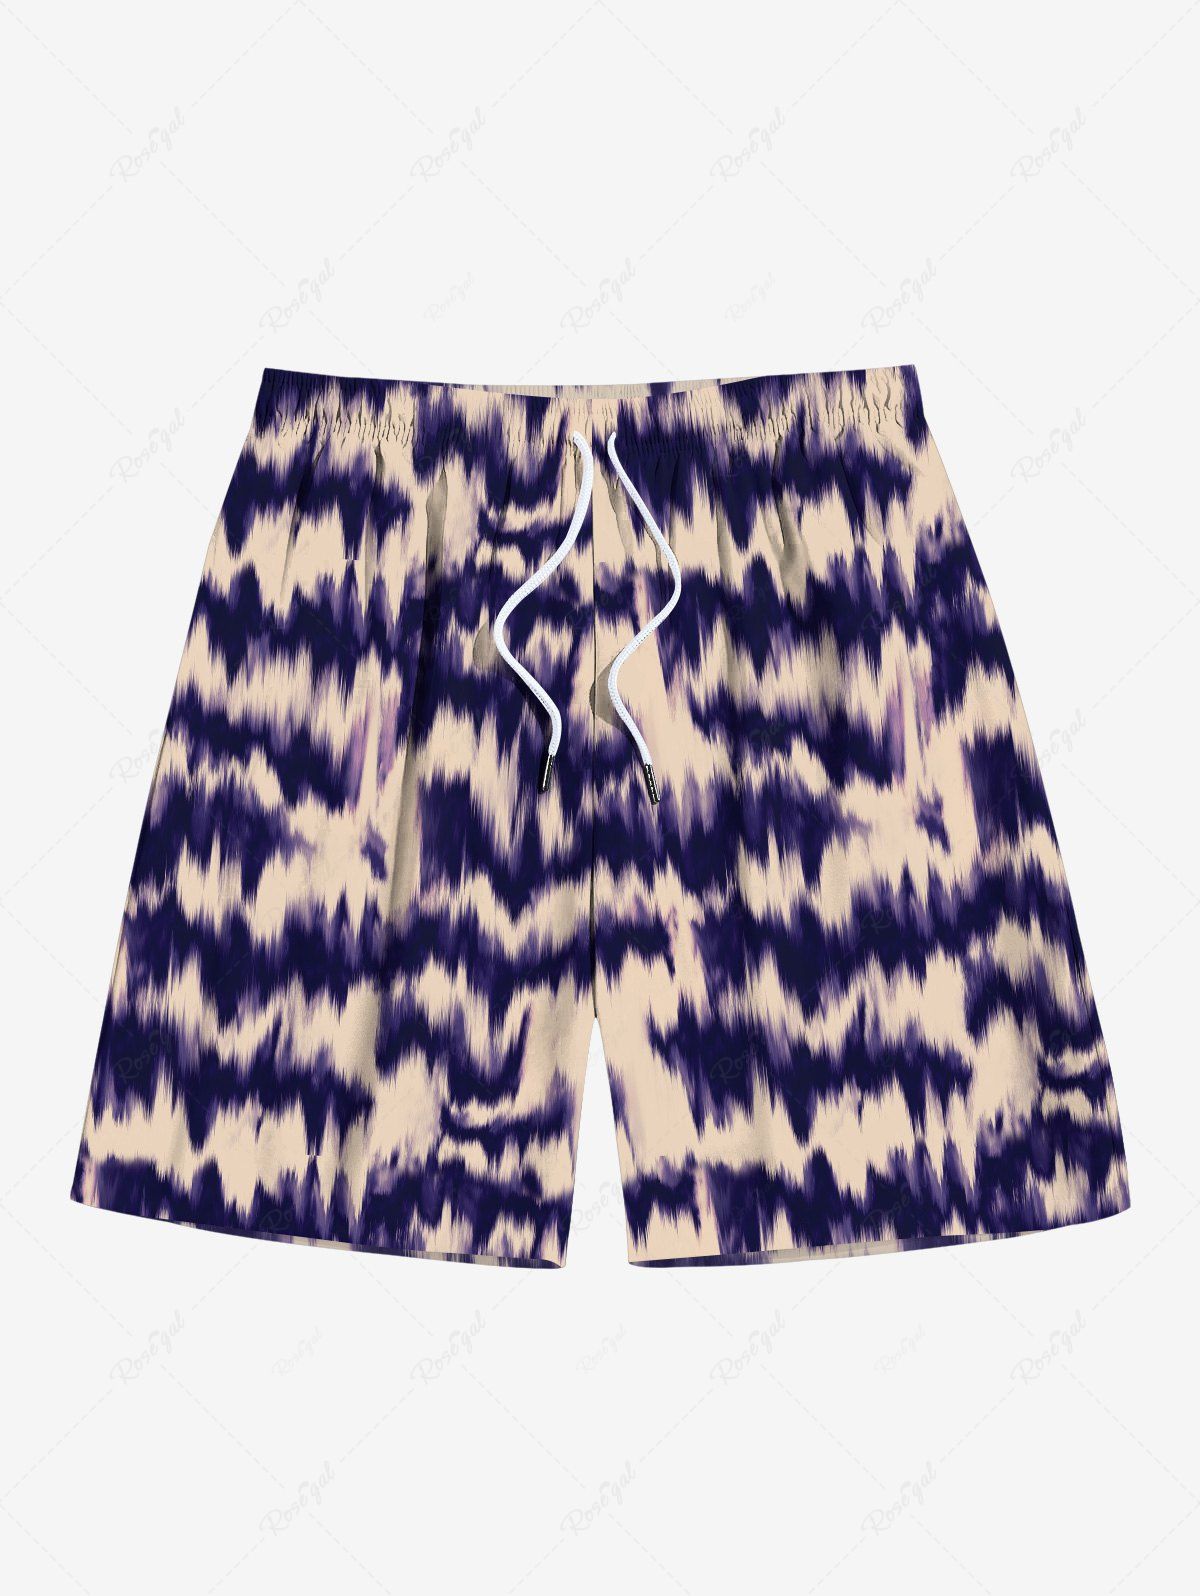 Unique Men's Vacation Style Streak Dye Colorblock Print Beach Shorts  